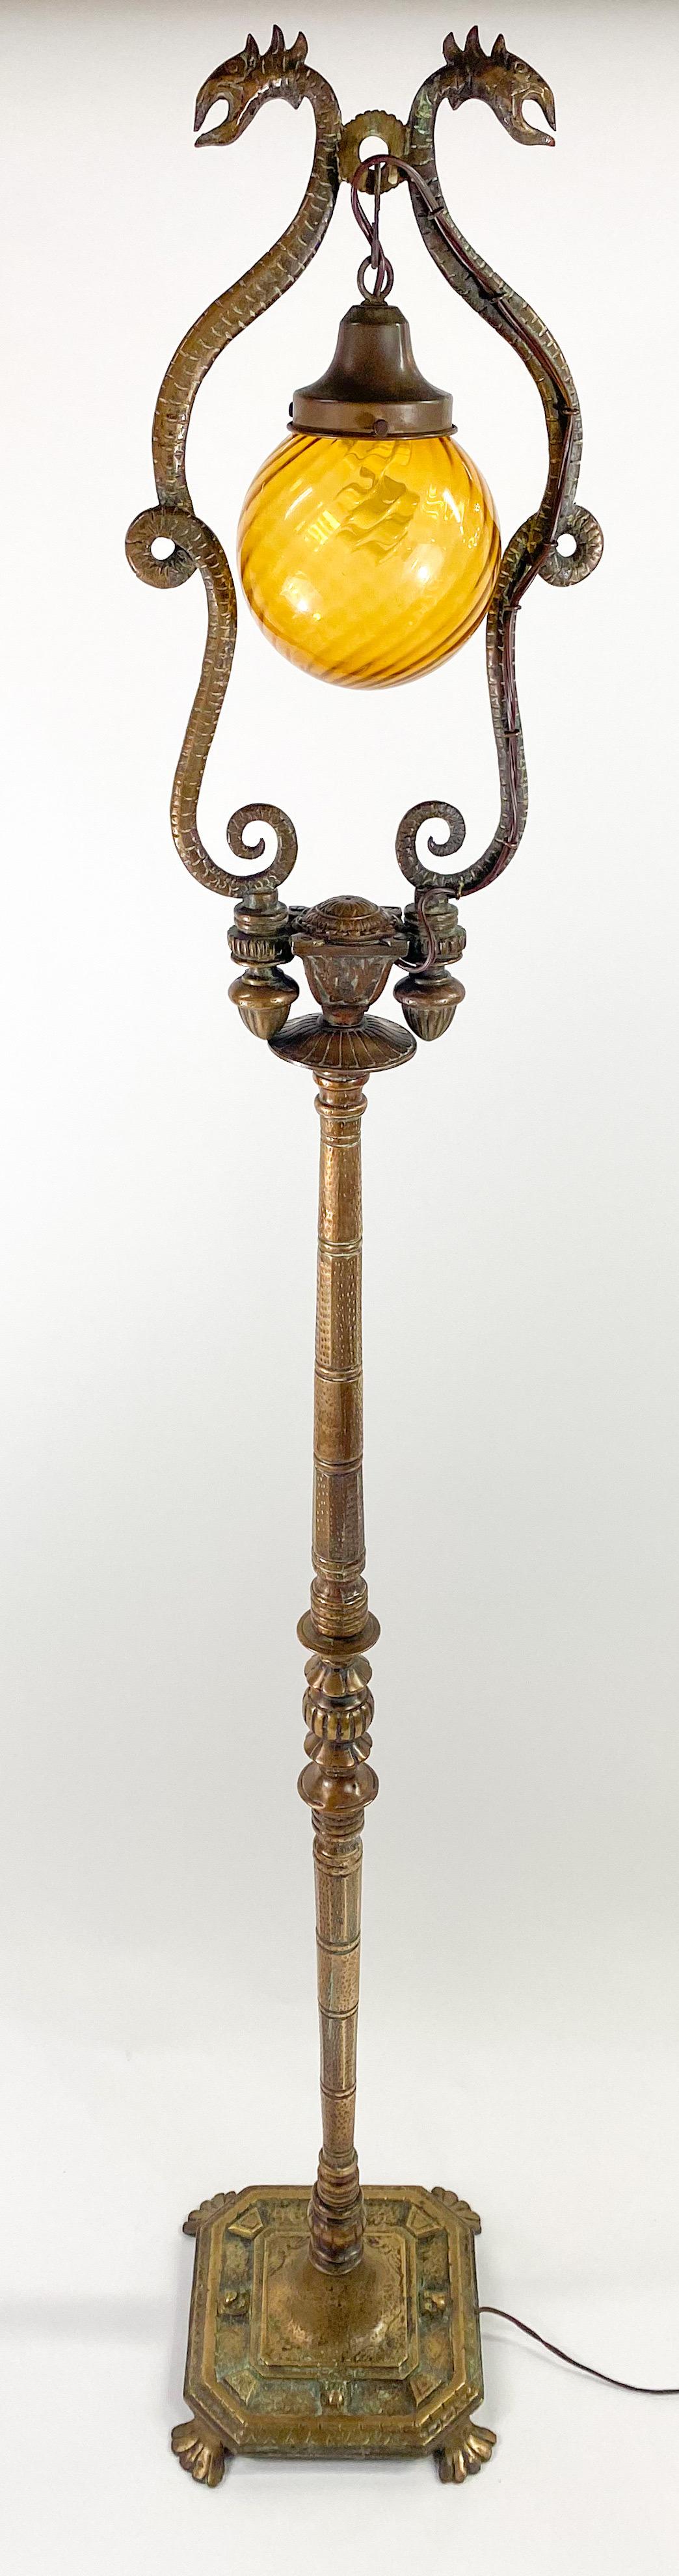 Eine außergewöhnliche, seltene französische Stehlampe im Stil des späten 19. Jahrhunderts im Rokoko-Revival mit erstaunlichen Details. Die Stehlampe ist aus Bronze gefertigt und hat eine schöne Patina, die ihr Schönheit und Charme verleiht. Auf